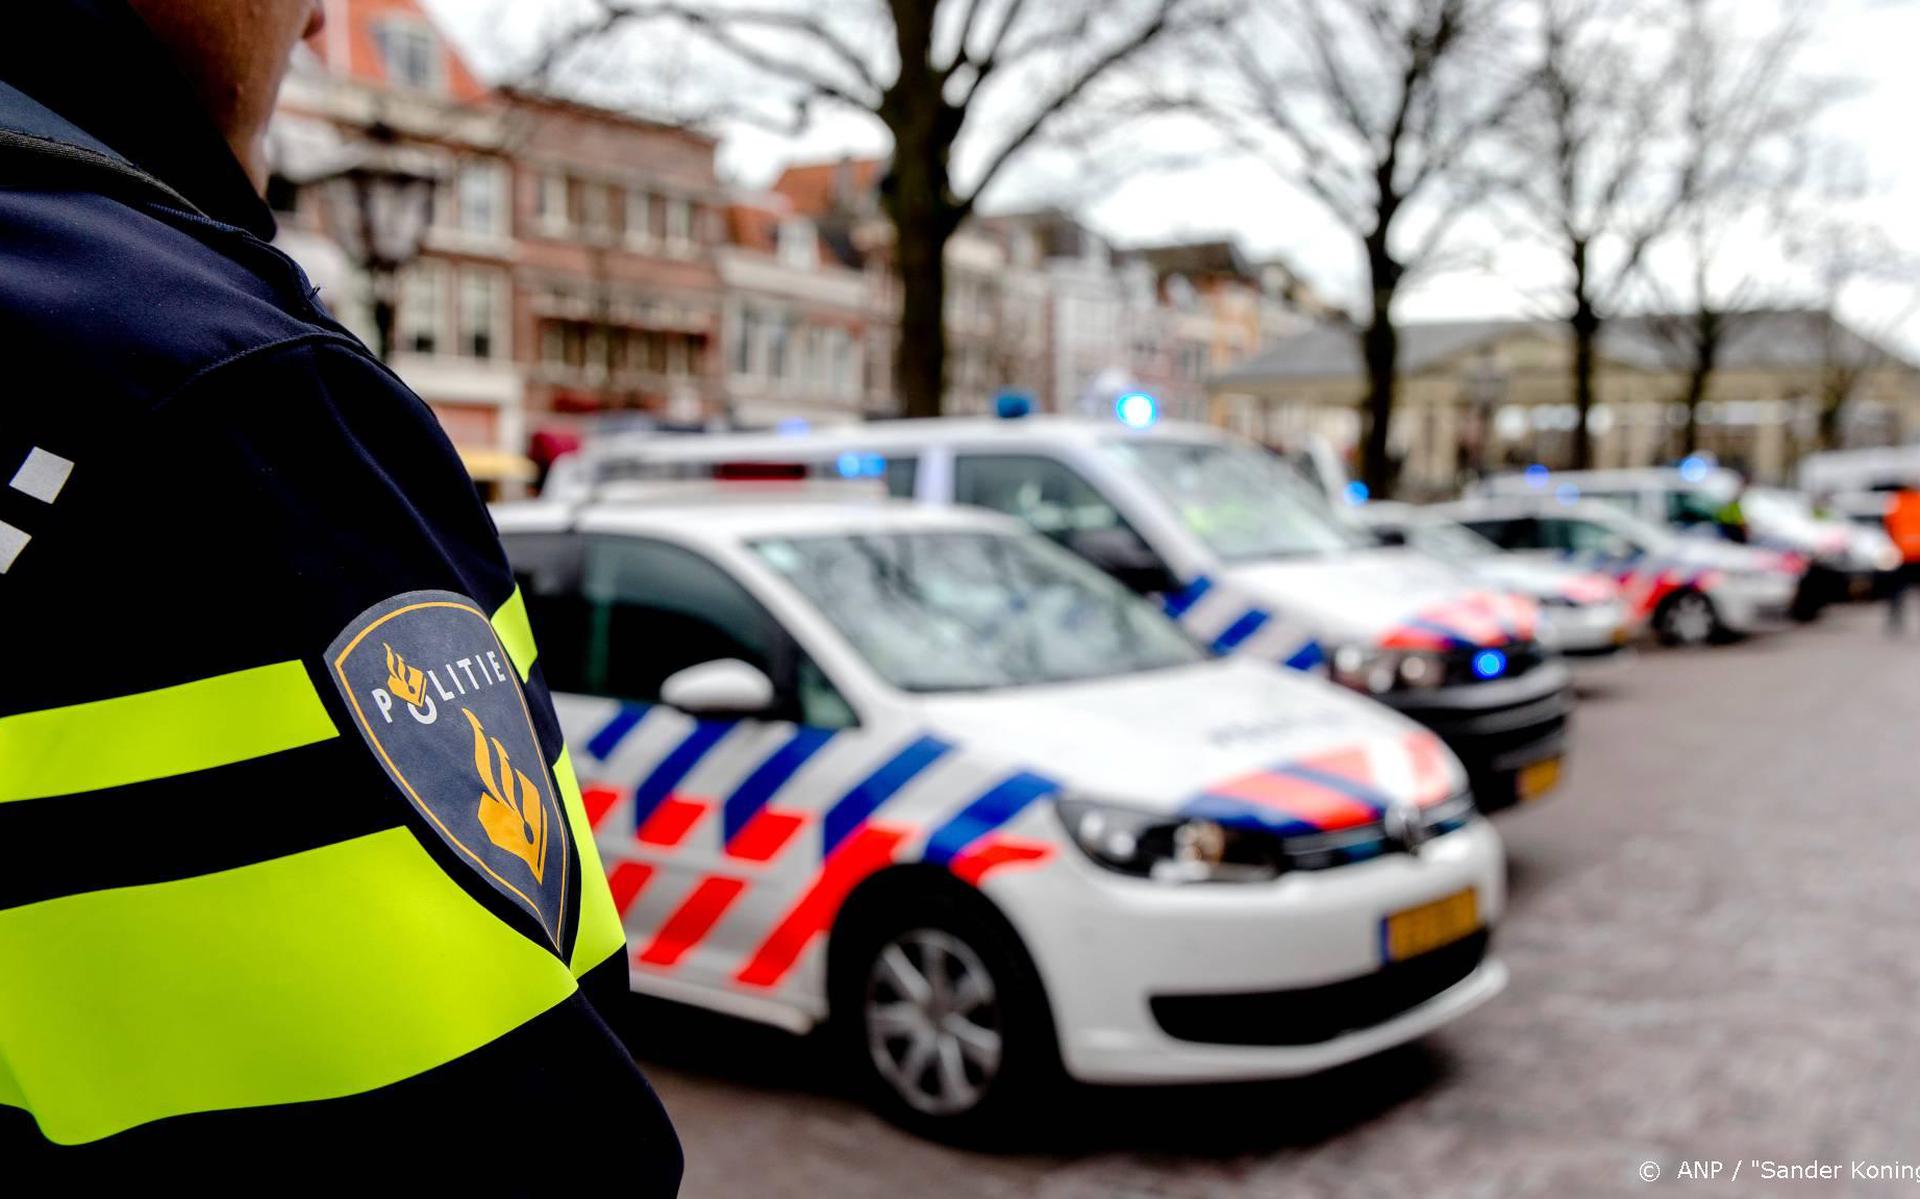 Minderjarigen aangehouden voor steekincident Amsterdam